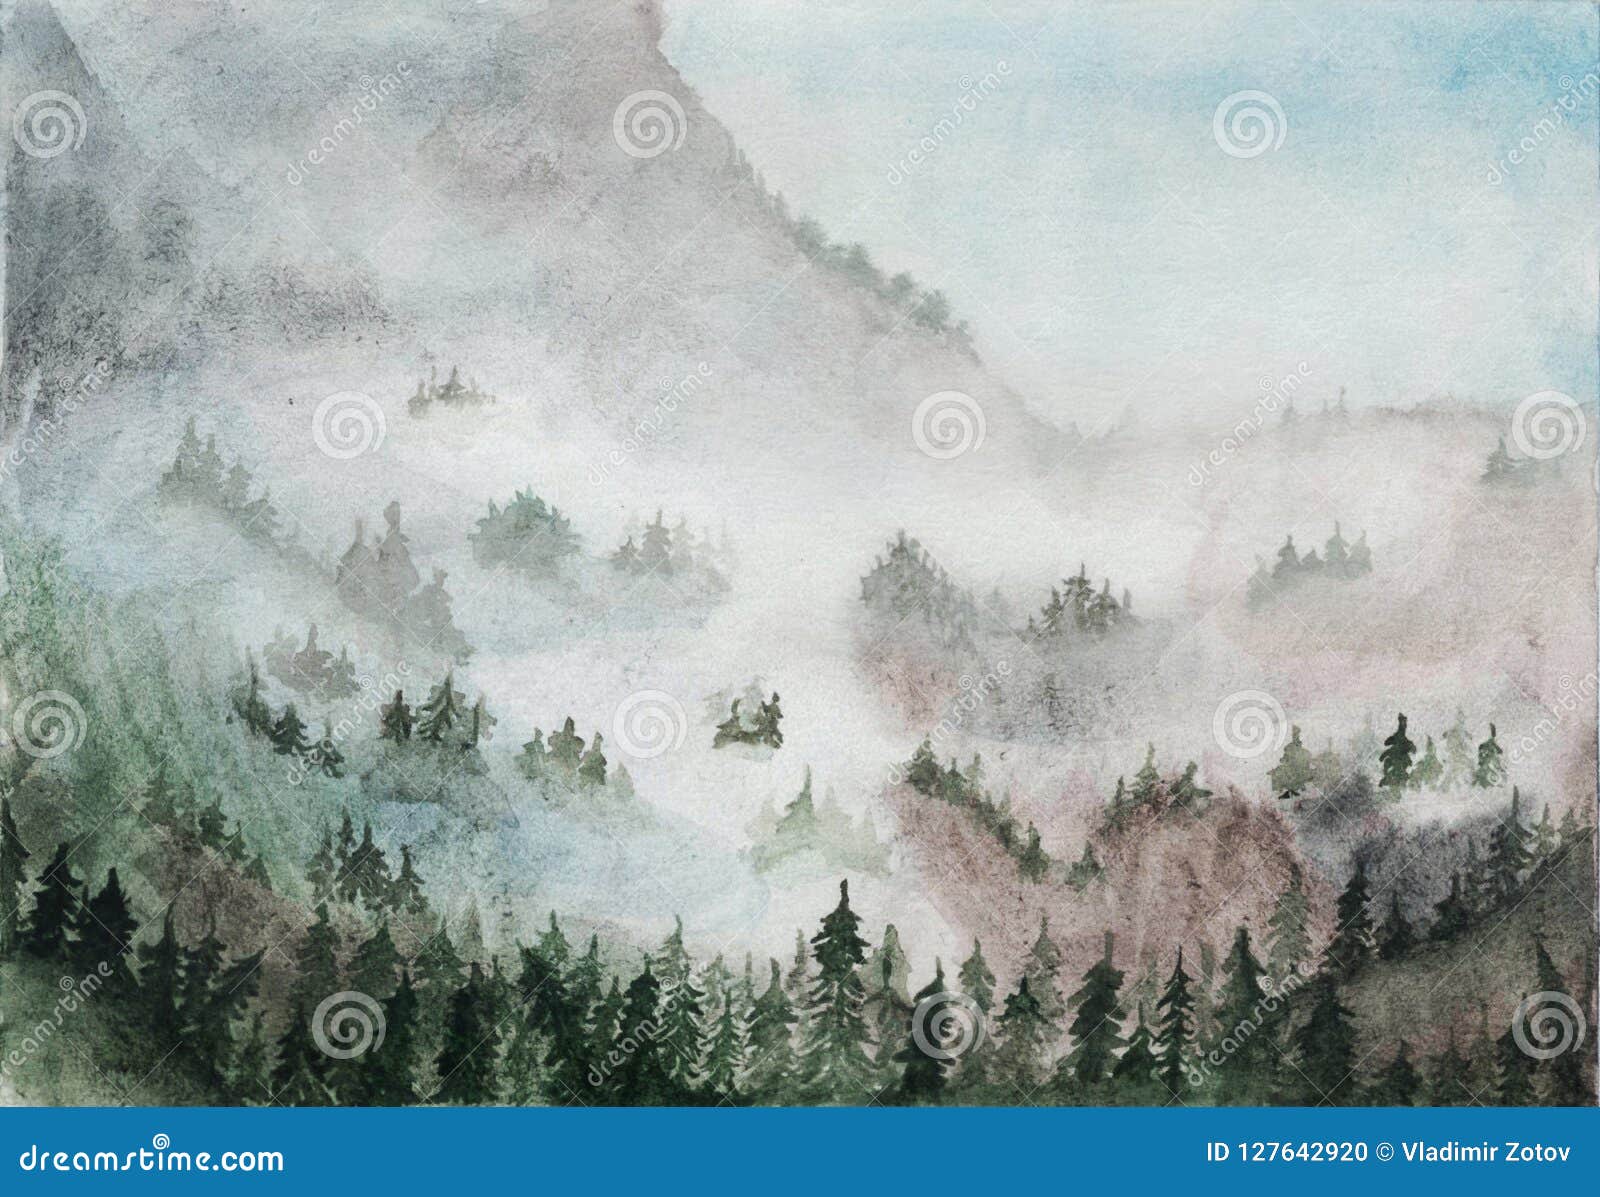 Grune Berge Mit Baumen Des Waldes Im Nebel Adobe Photoshop Fur Korrekturen Copyspace Postkarte Stock Abbildung Illustration Von Auszug Anstrich 127642920